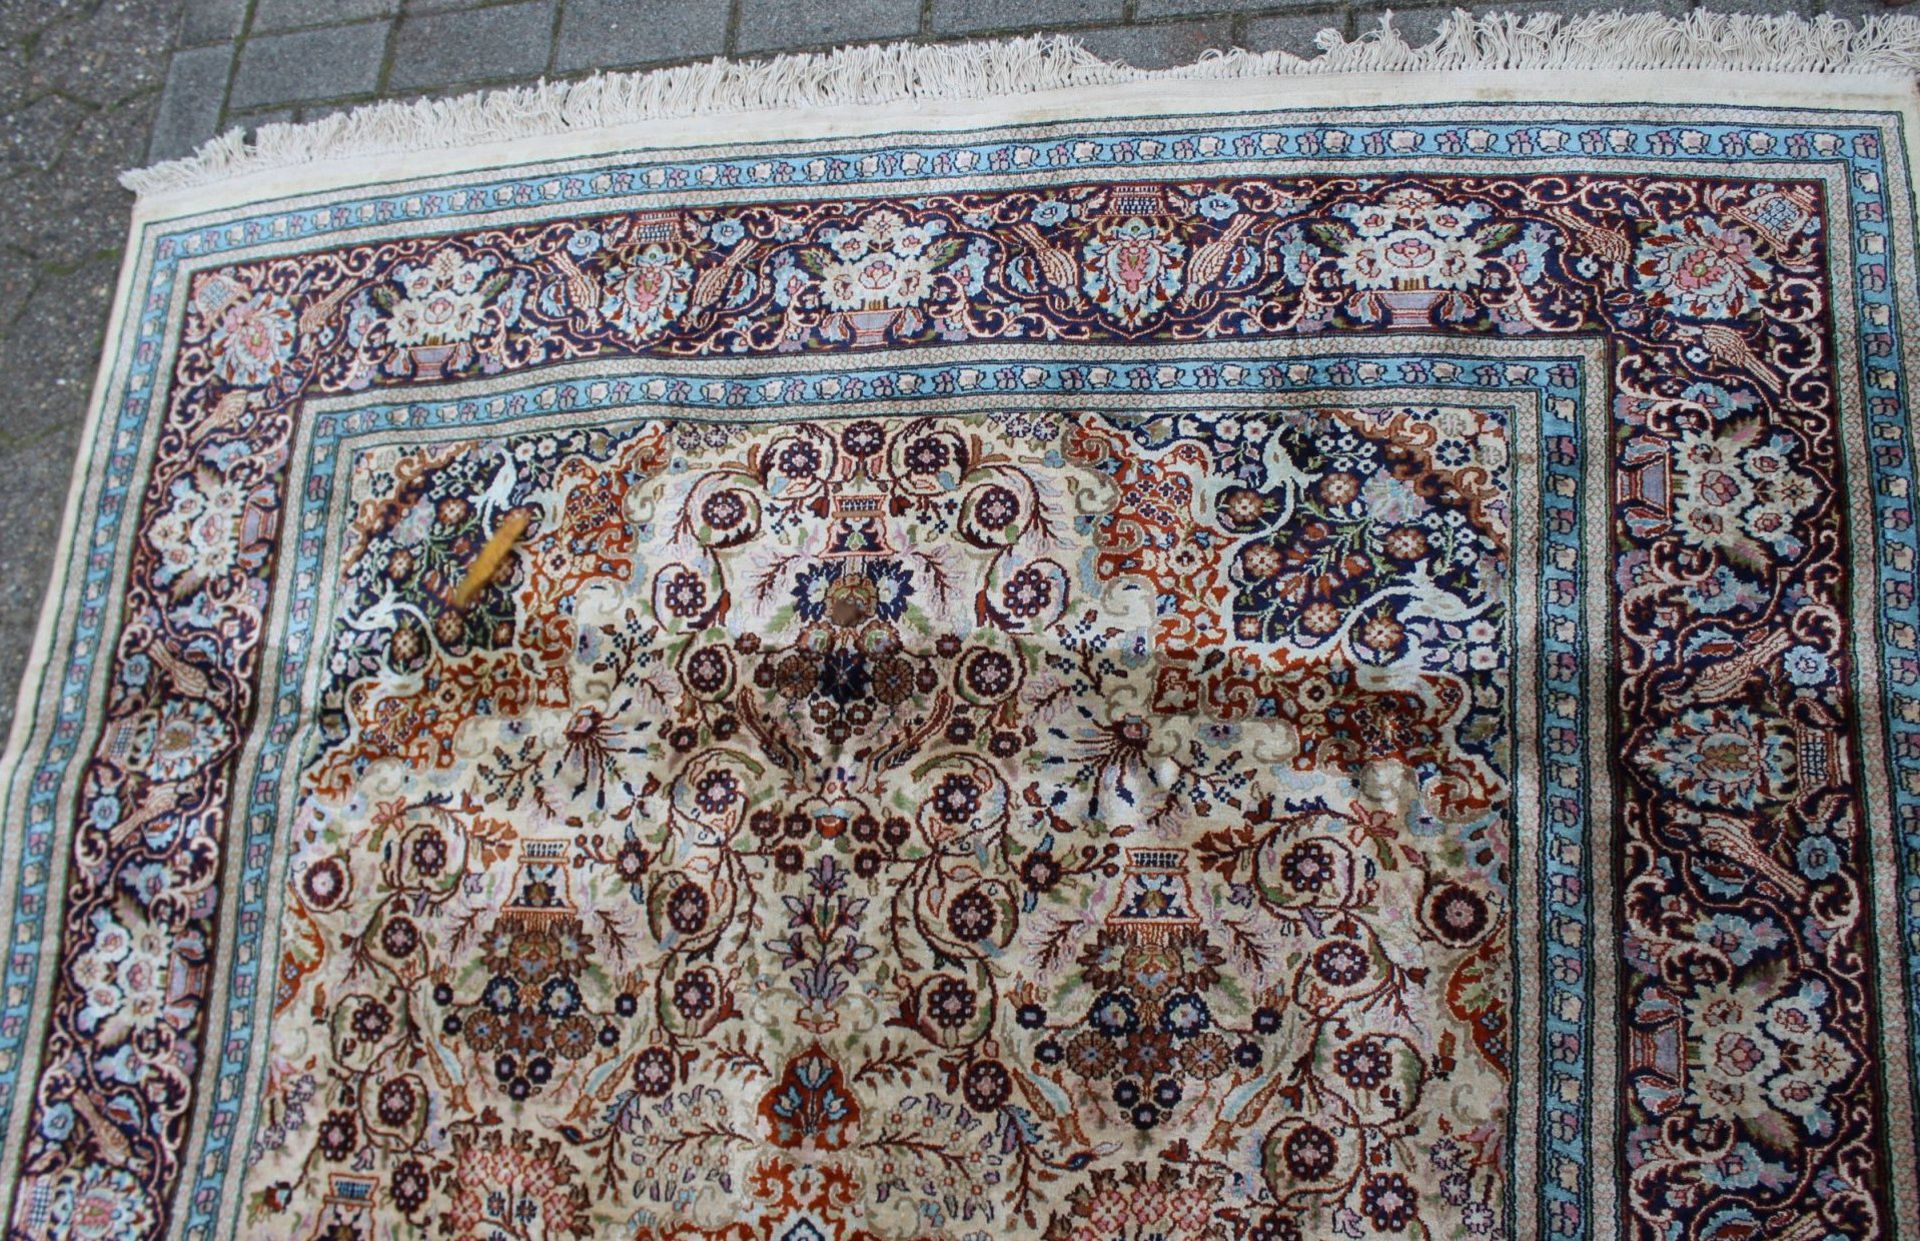 gr. Orientteppich, Seidenflor, schönes Muster, guter Zustand, 285 x 180cm. - Bild 3 aus 5